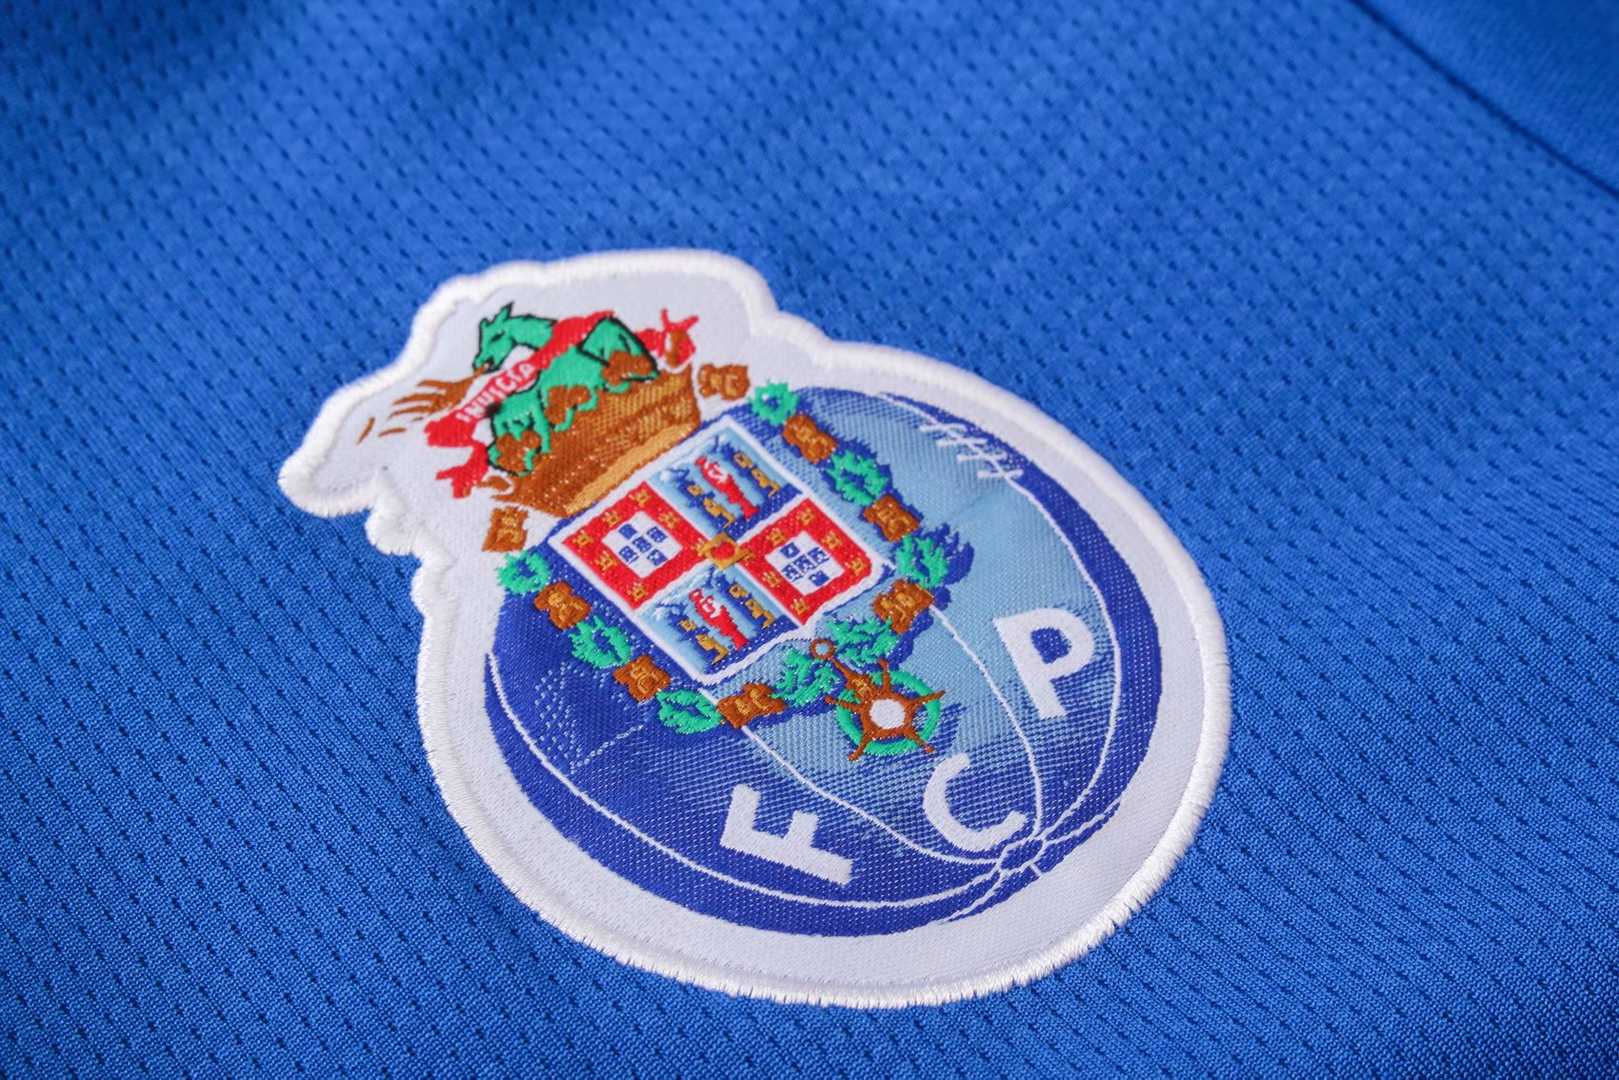 2019/20 FC Porto Blue Mens Soccer Training Suit(Jacket + Pants)